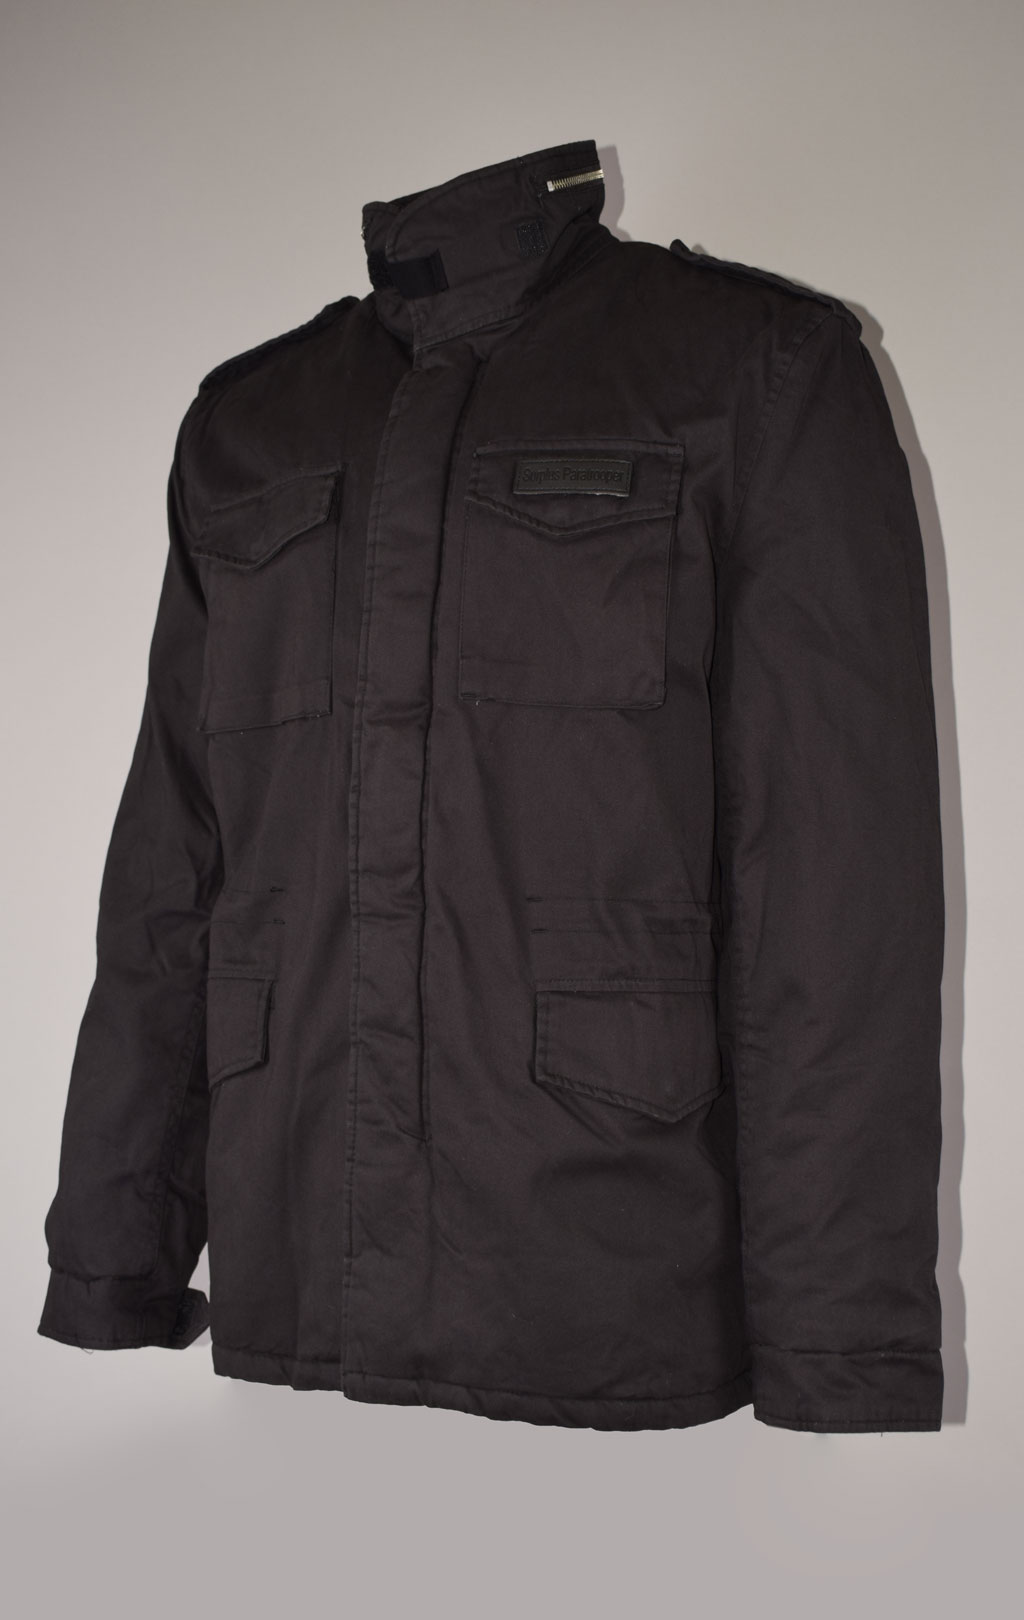 Куртка Surplus PARATROOPER WINTER black 